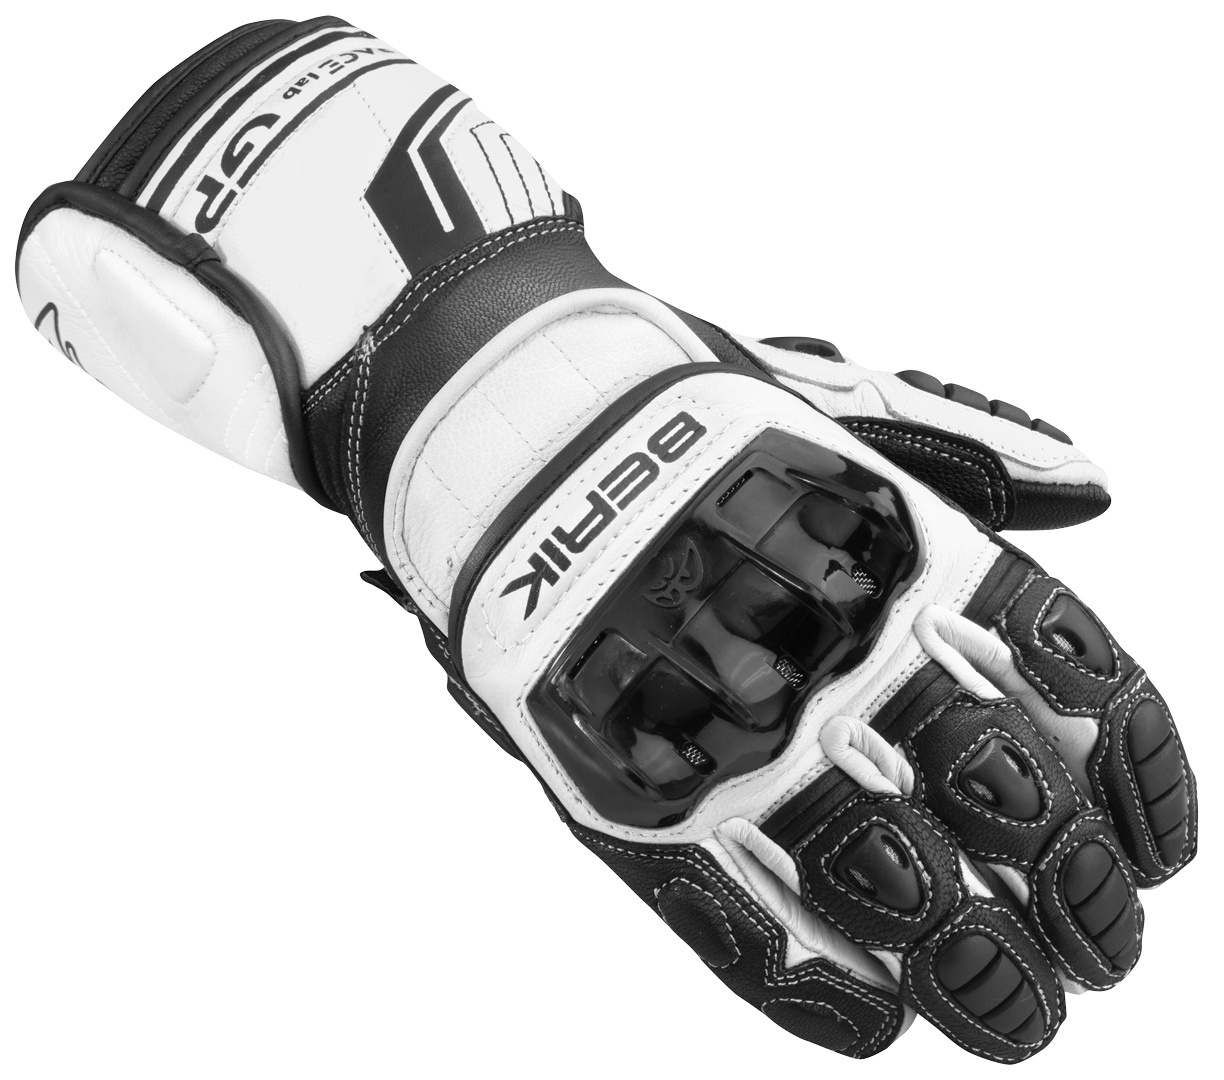 Мотоциклетные перчатки Berik Track Pro с регулируемыми запястьями, белый/черный мотоциклетные перчатки track pro berik белый черный